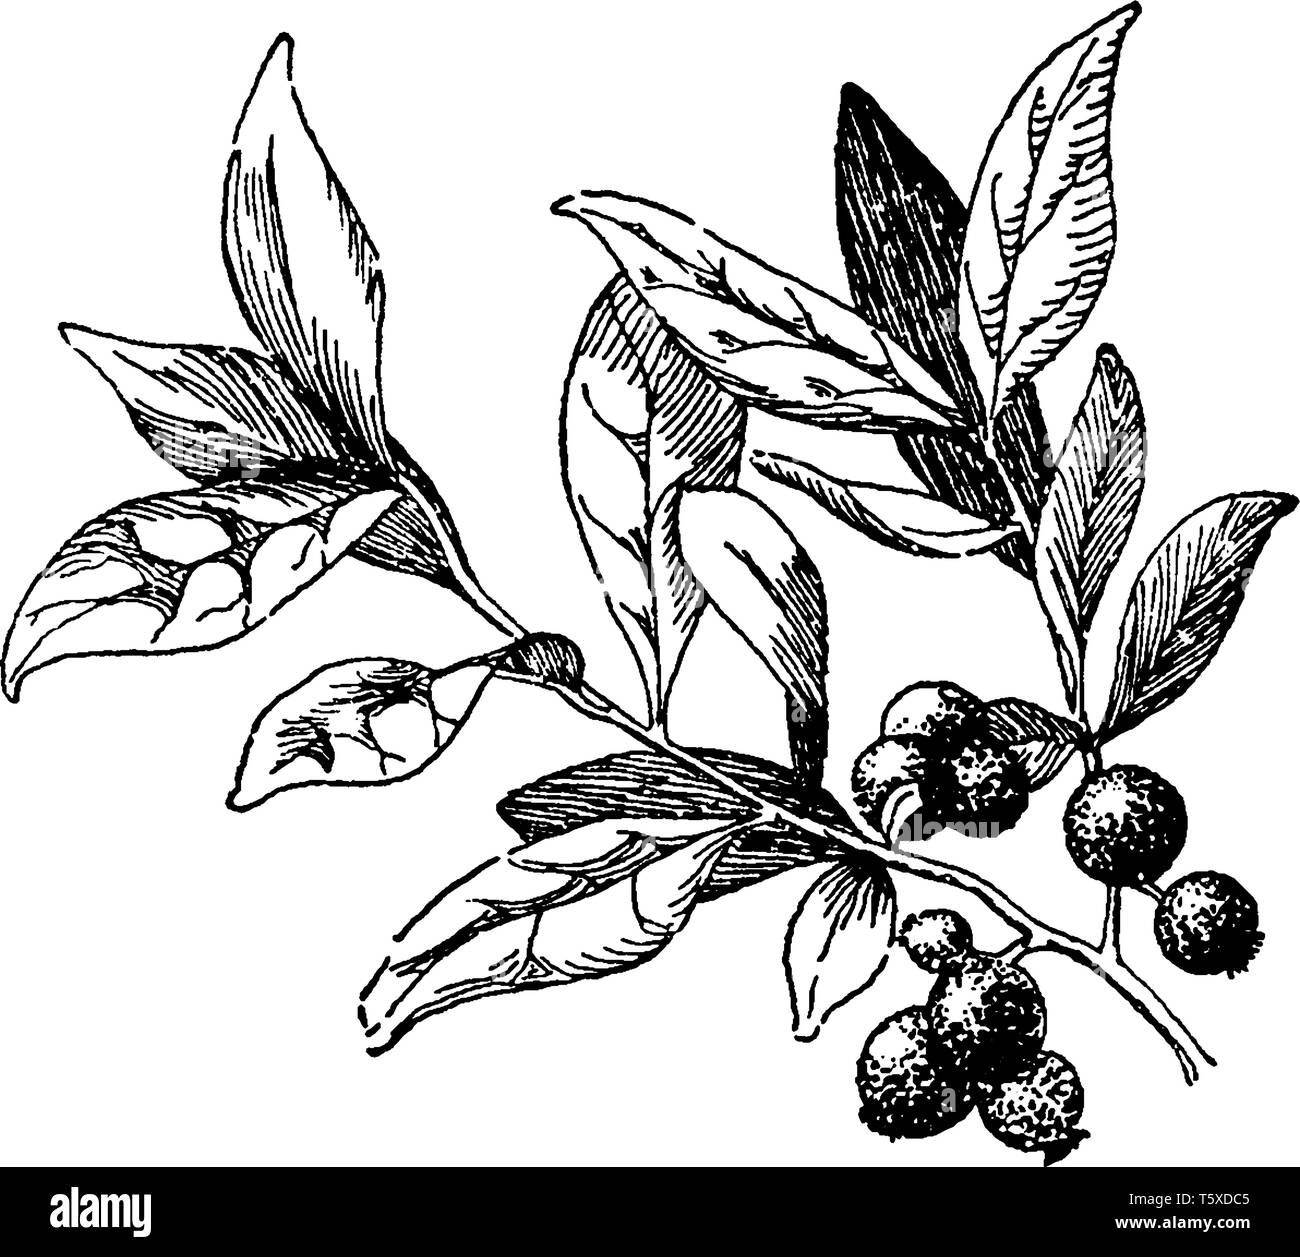 Une photo montrant une branche d'arbre avec son fruit Huckleberry. La myrtille est un fruit de la famille des éricacées de plantes, vintage ou dessin de ligne engra Illustration de Vecteur